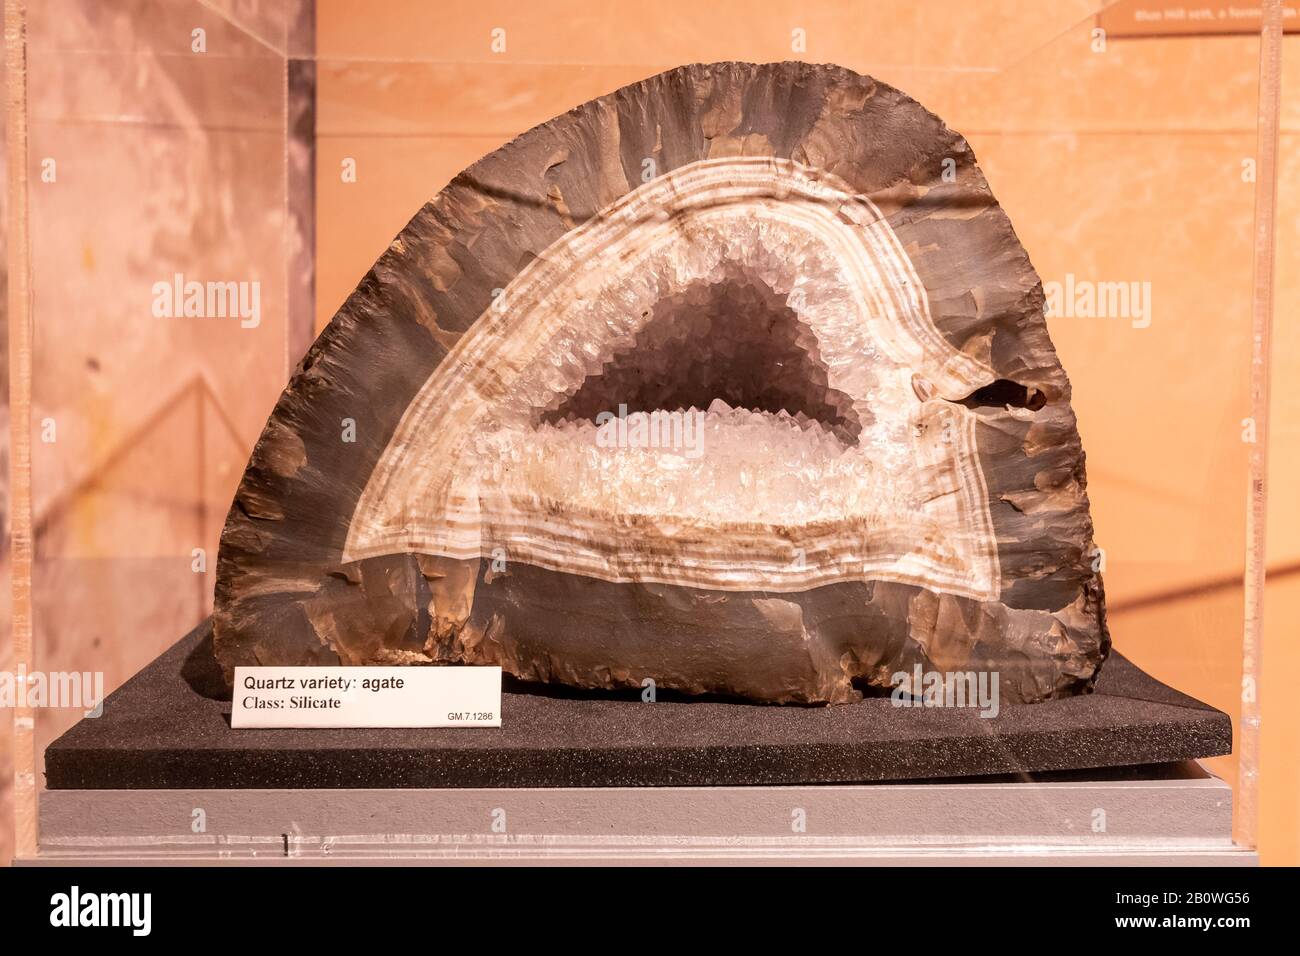 Geologische Museumsausstellung, Quarzvarietät Agat, Klasse Silikat Stockfoto